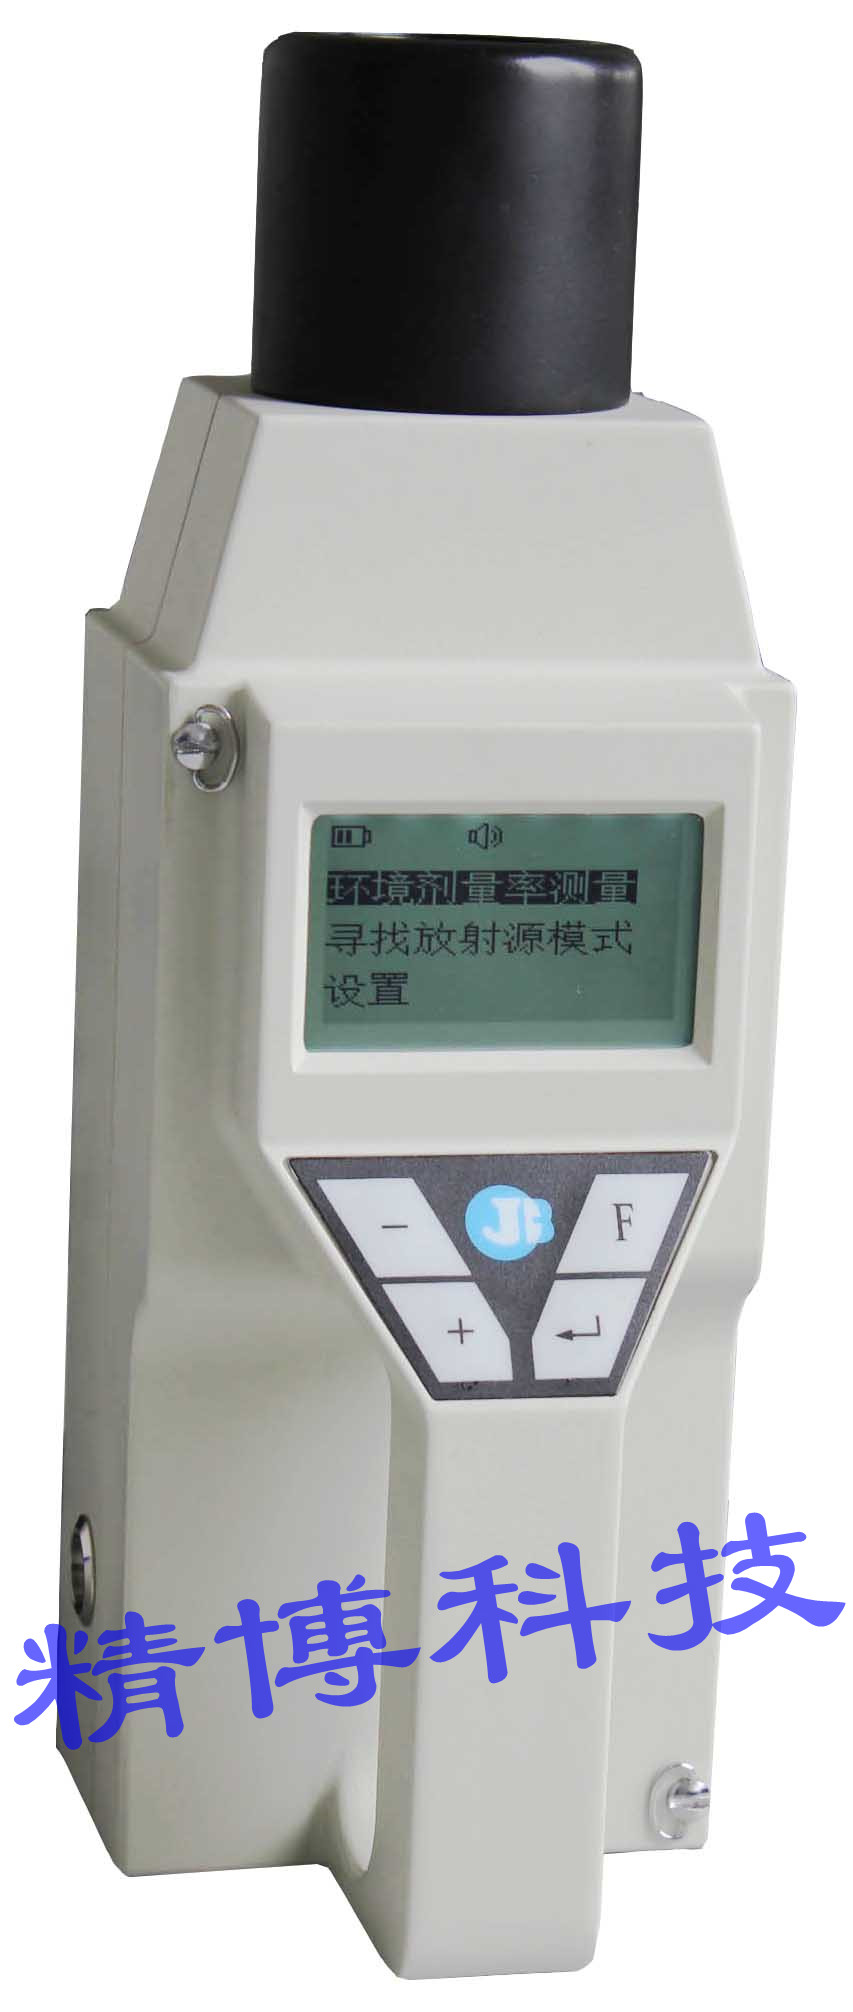 JB5000型环境监测与辐射防护用χ、γ辐射剂量当量率仪